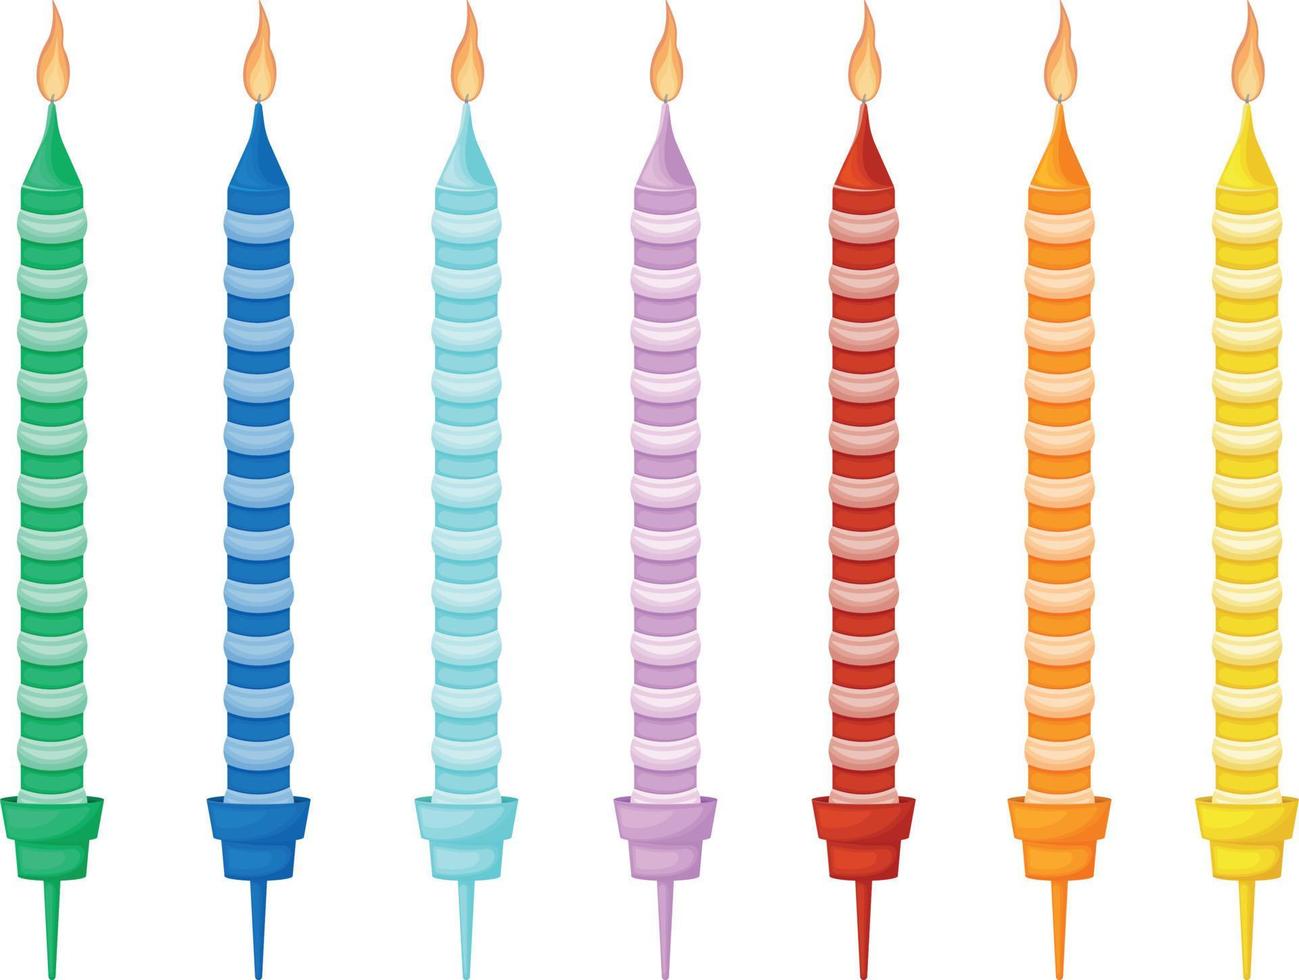 bougies pour le gâteau. bougies de vacances colorées pour la décoration de gâteaux. accessoires lumineux pour les vacances. illustration vectorielle. vecteur